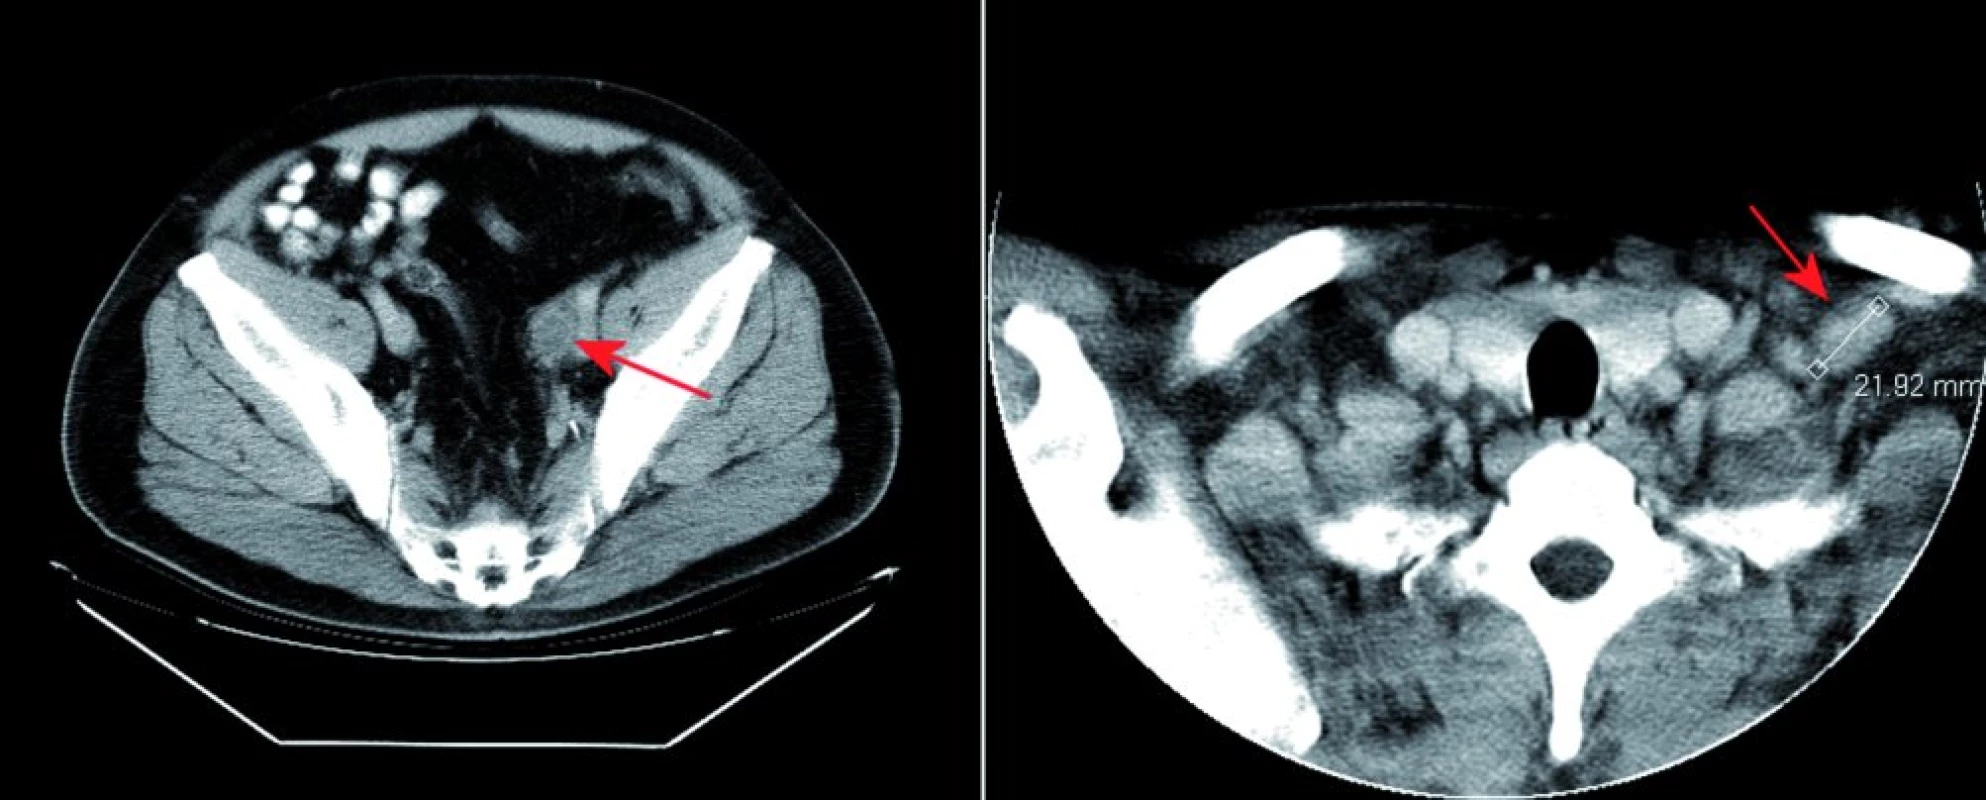 Vstupní CT vyšetření. Na obrázku vlevo CT vyšetření zobrazuje v pánvi vlevo podél cévního svazku patologický uzlinový infiltrát (červená šipka). Na obrázku vpravo jsou při CT vyšetření krku zachyceny tři viditelné zvětšené lymfatické uzliny patologické vizáže v oblasti levé klíční kosti (červená šipka).